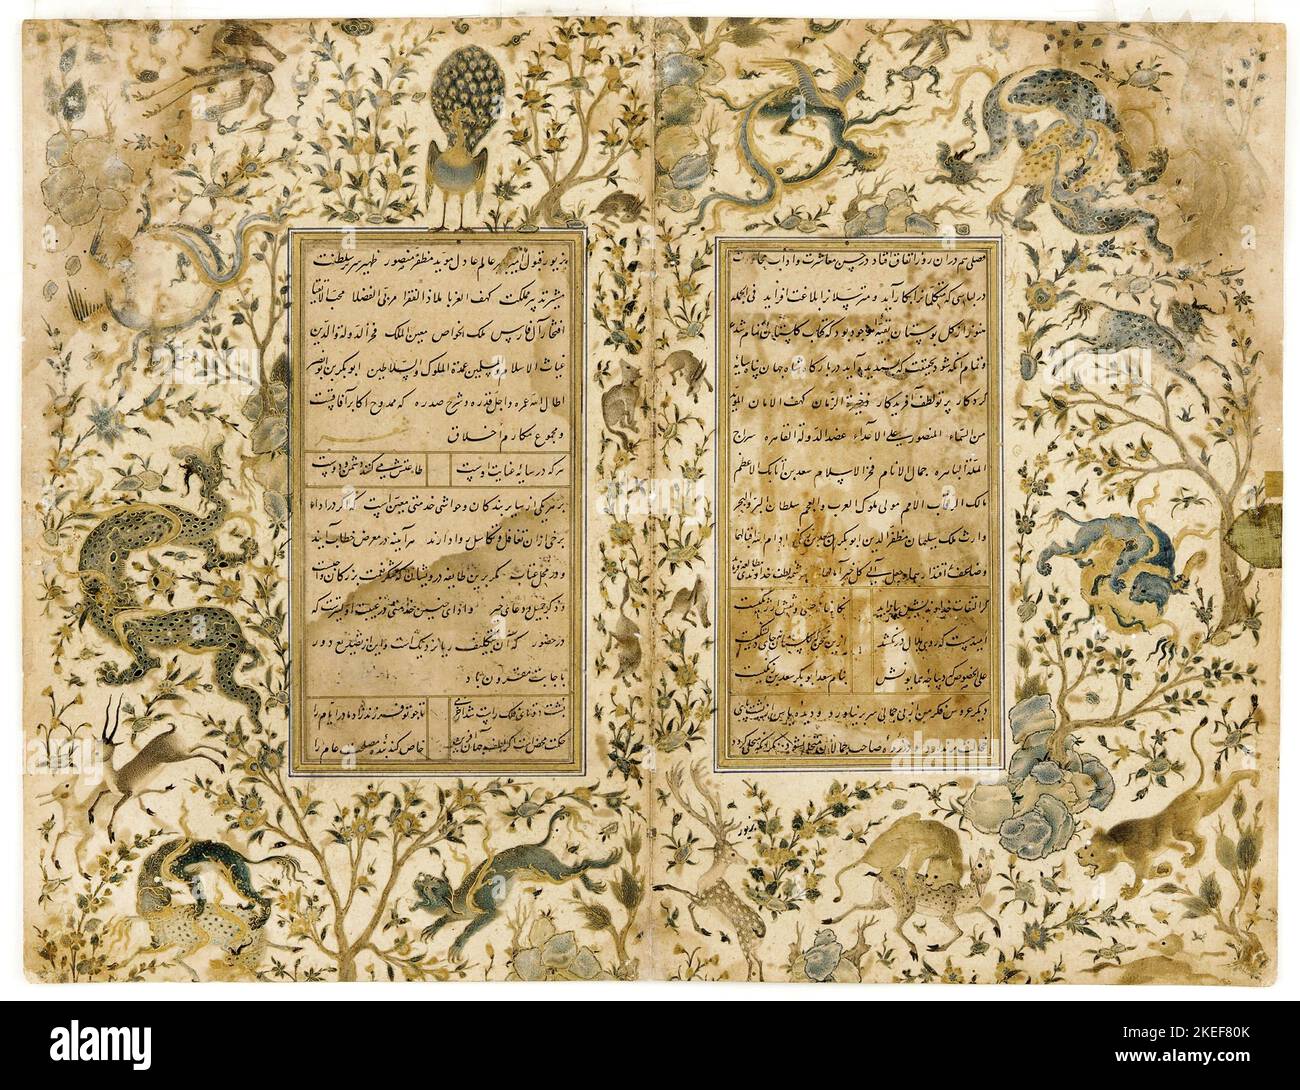 AQA Mirak, Un manoscritto del Gulistan; SAa’di in a Rose Garden, dal 1468 alla prima metà del 16th ° secolo, Freer Gallery of Art, Washington, D.C., USA. Foto Stock